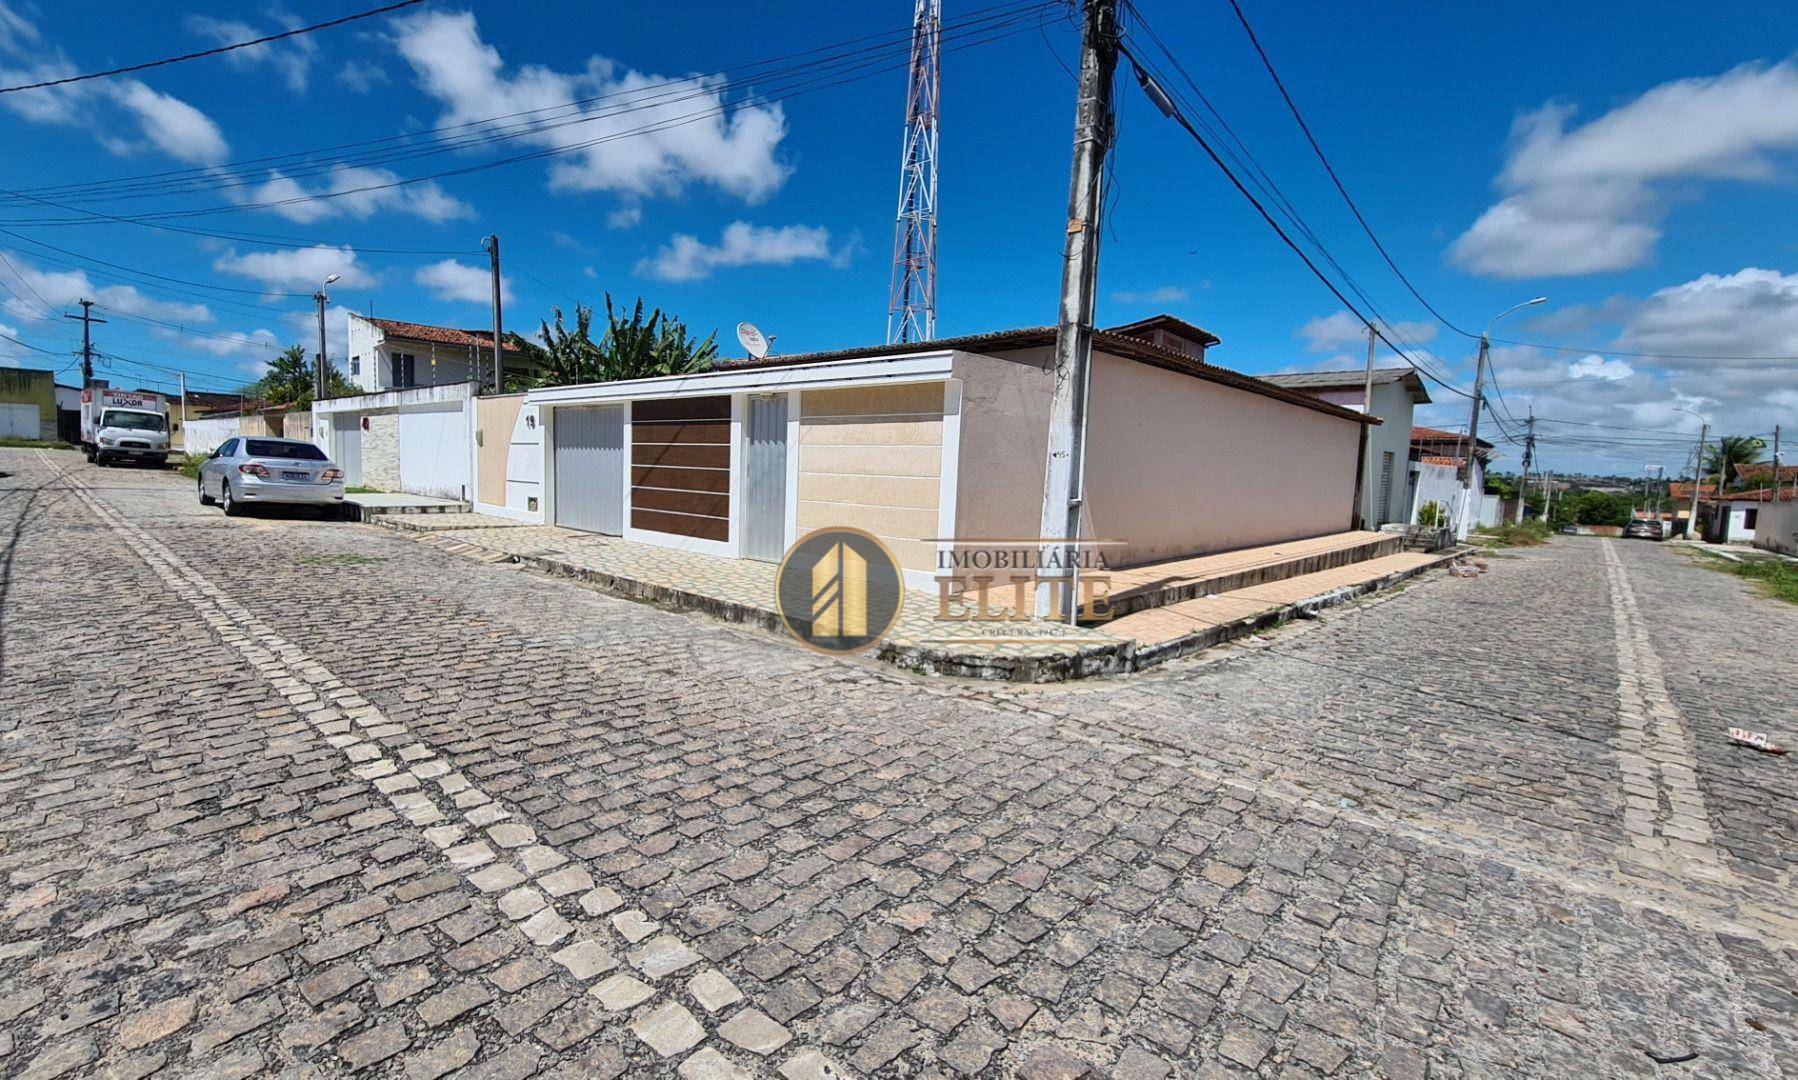 Casa com 3 quartos sendo 1 suíte à venda, 178 m² por R$ 290.000 - Boa Esperança - Parnamirim/RN